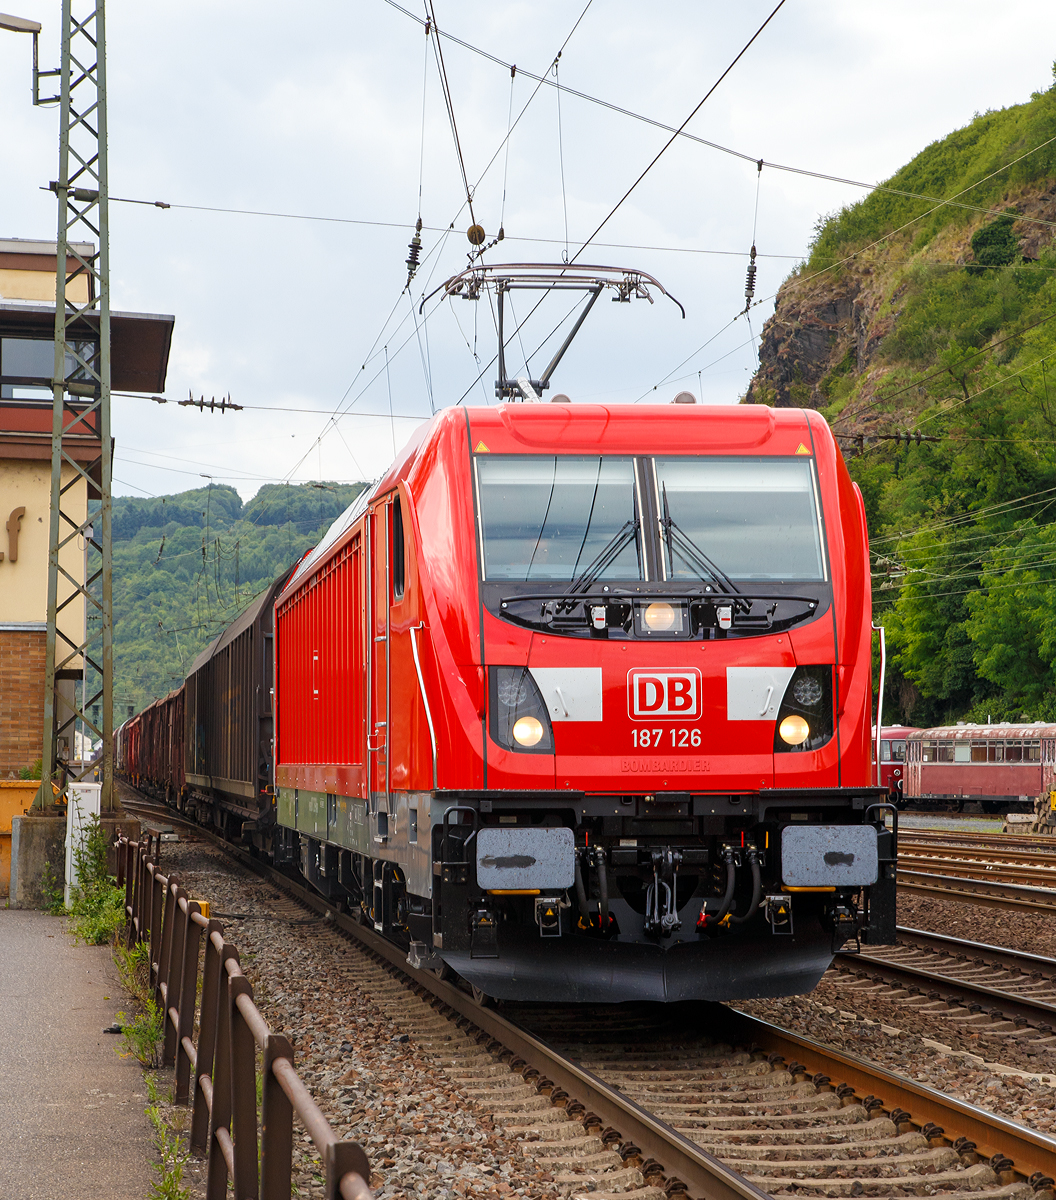 
Die nagelneue 187 126-8 (91 80 6187 126-8 D-DB) der DB Cargo Deutschland AG fährt am 16.06.2017 mit einem gem. Güterzug durch Linz am Rhein in Richtung Süden. 

Die TRAXX F140 AC3 wurde 2017 von Bombardier in Kassel gebaut. Die BR 187 (TRAXX F140 AC3) der DB Cargo Deutschland AG haben keine Last-Mile-Einrichtung (Dieselmotor). Nach derzeitigen Planungen ist für den großen Rahmenvertrag von bis zu 450 Lokomotiven auch kein Einbau des Dieselmotors vorgesehen.